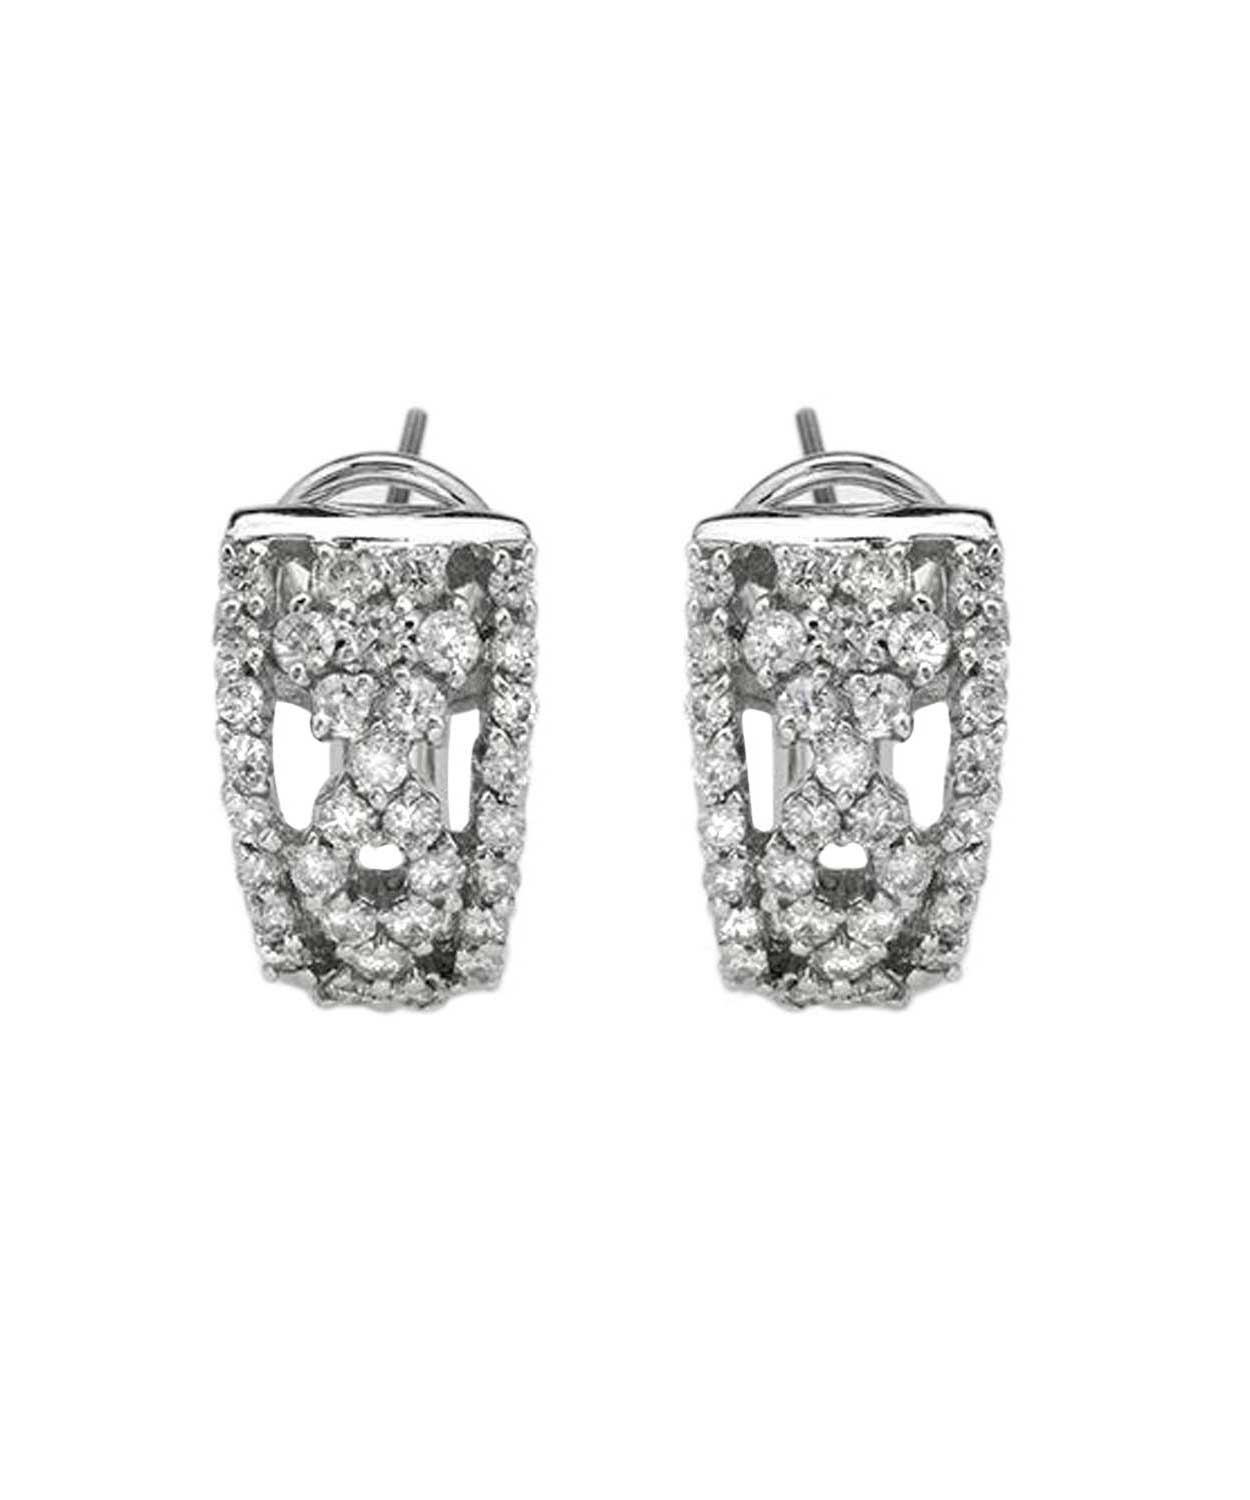 1.16 ctw Diamond 18k White Gold Fashion Earrings View 1